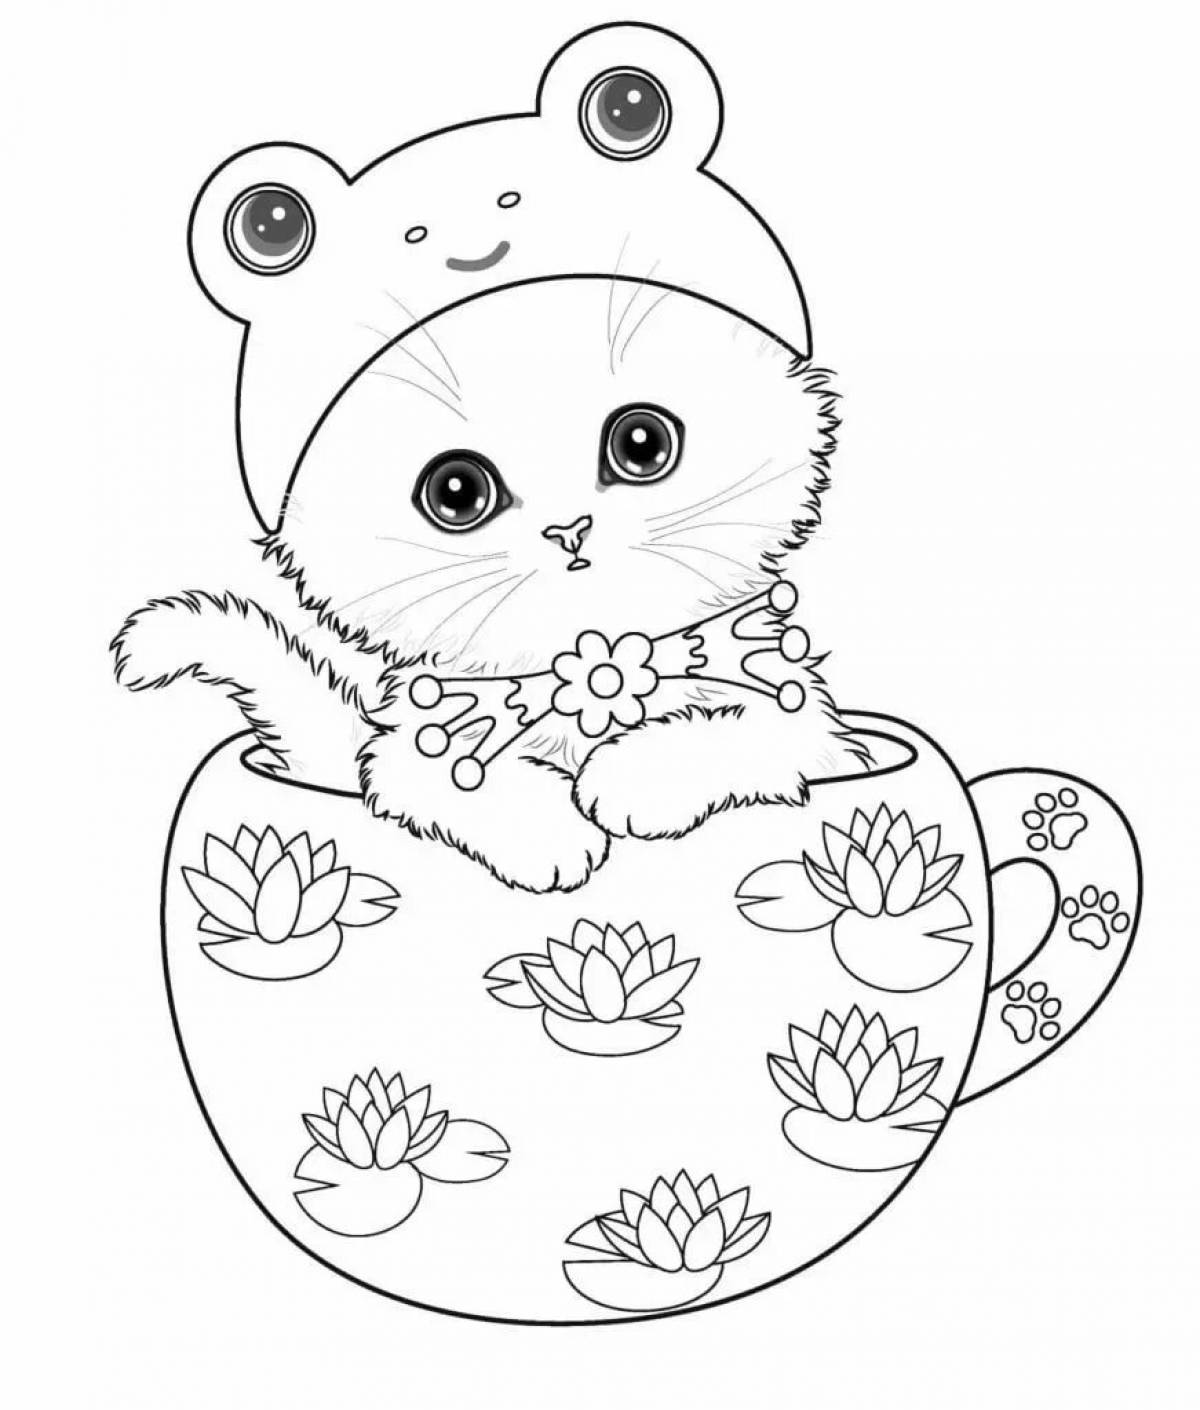 Kitten in a mug #2